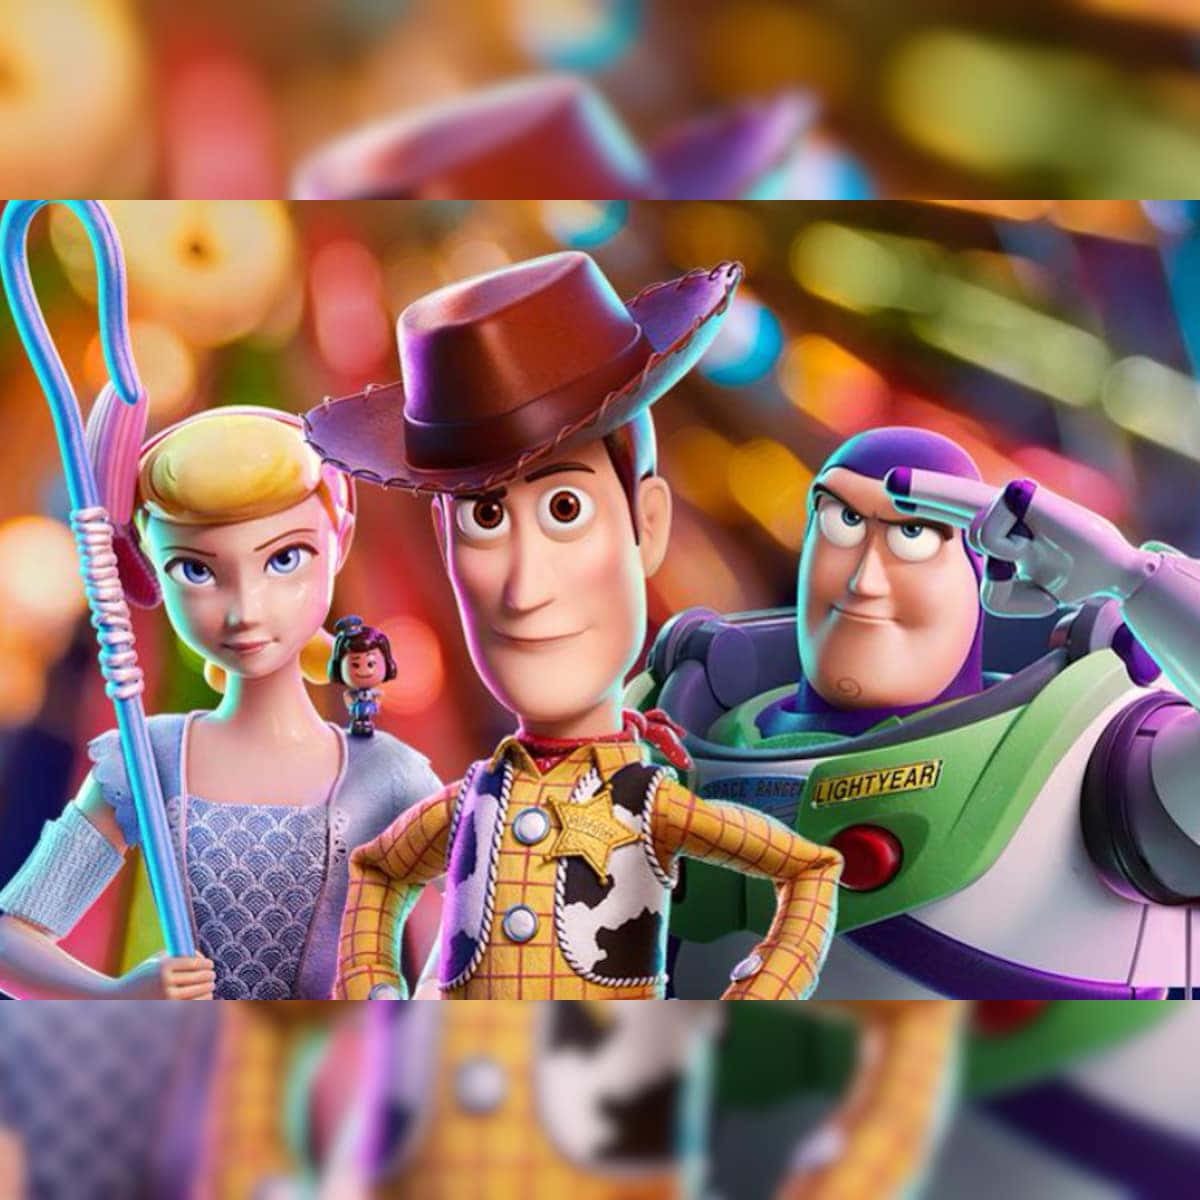 Vänneråterförenade: Buzz Och Woody Hittar Sina Förlorade Kamrater I Toy Story 4